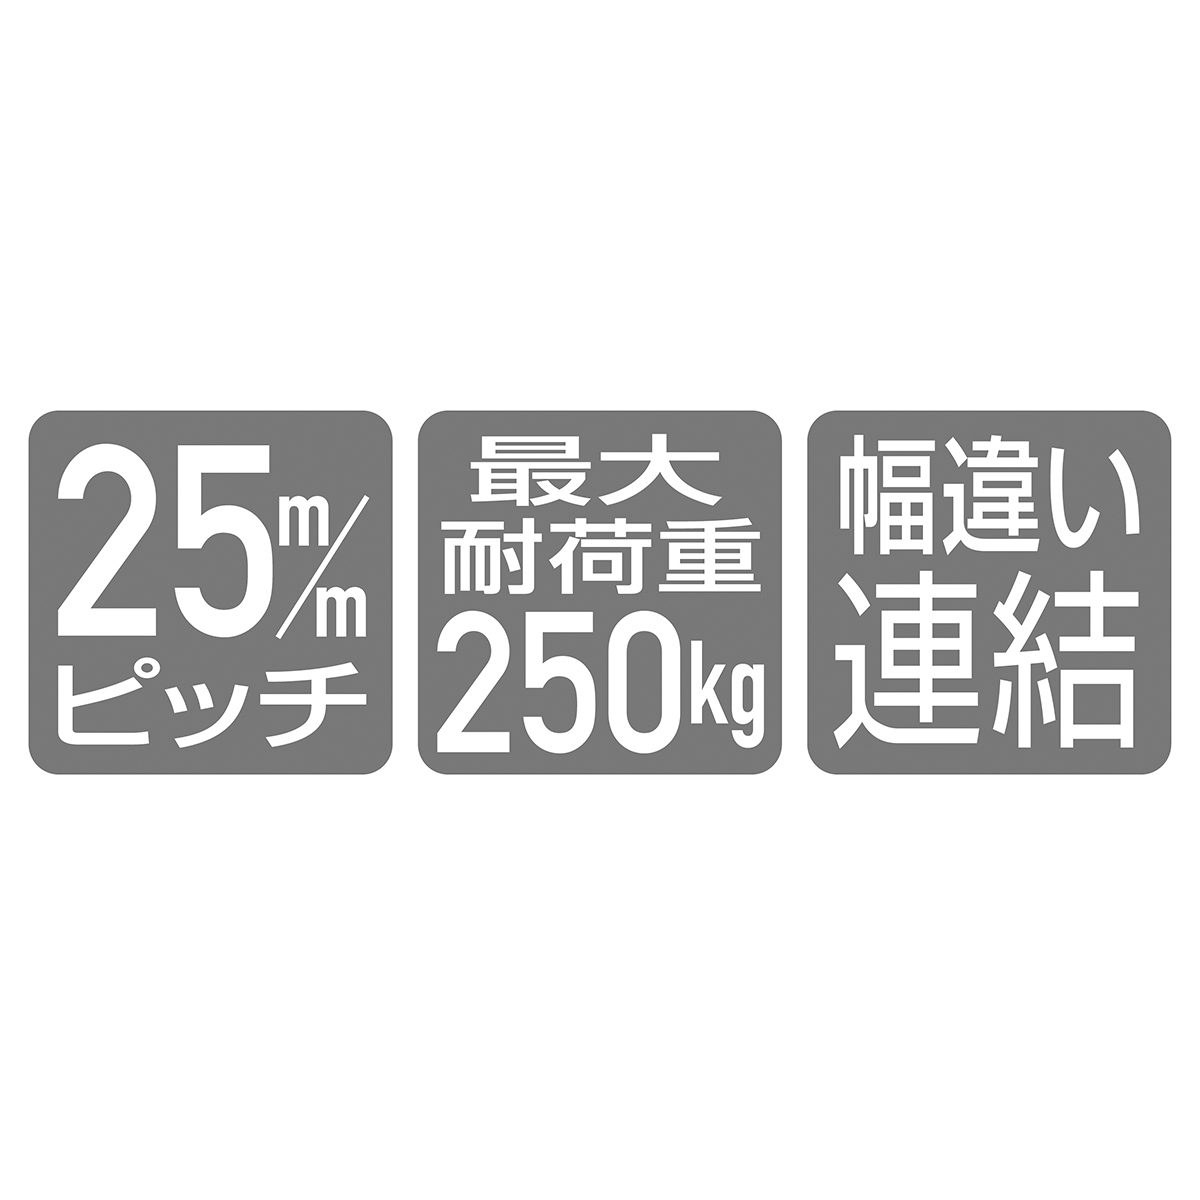 TR ネットタイプ W75cm 連結 ホワイト H180cm 【通販】ストア・エキスプレス